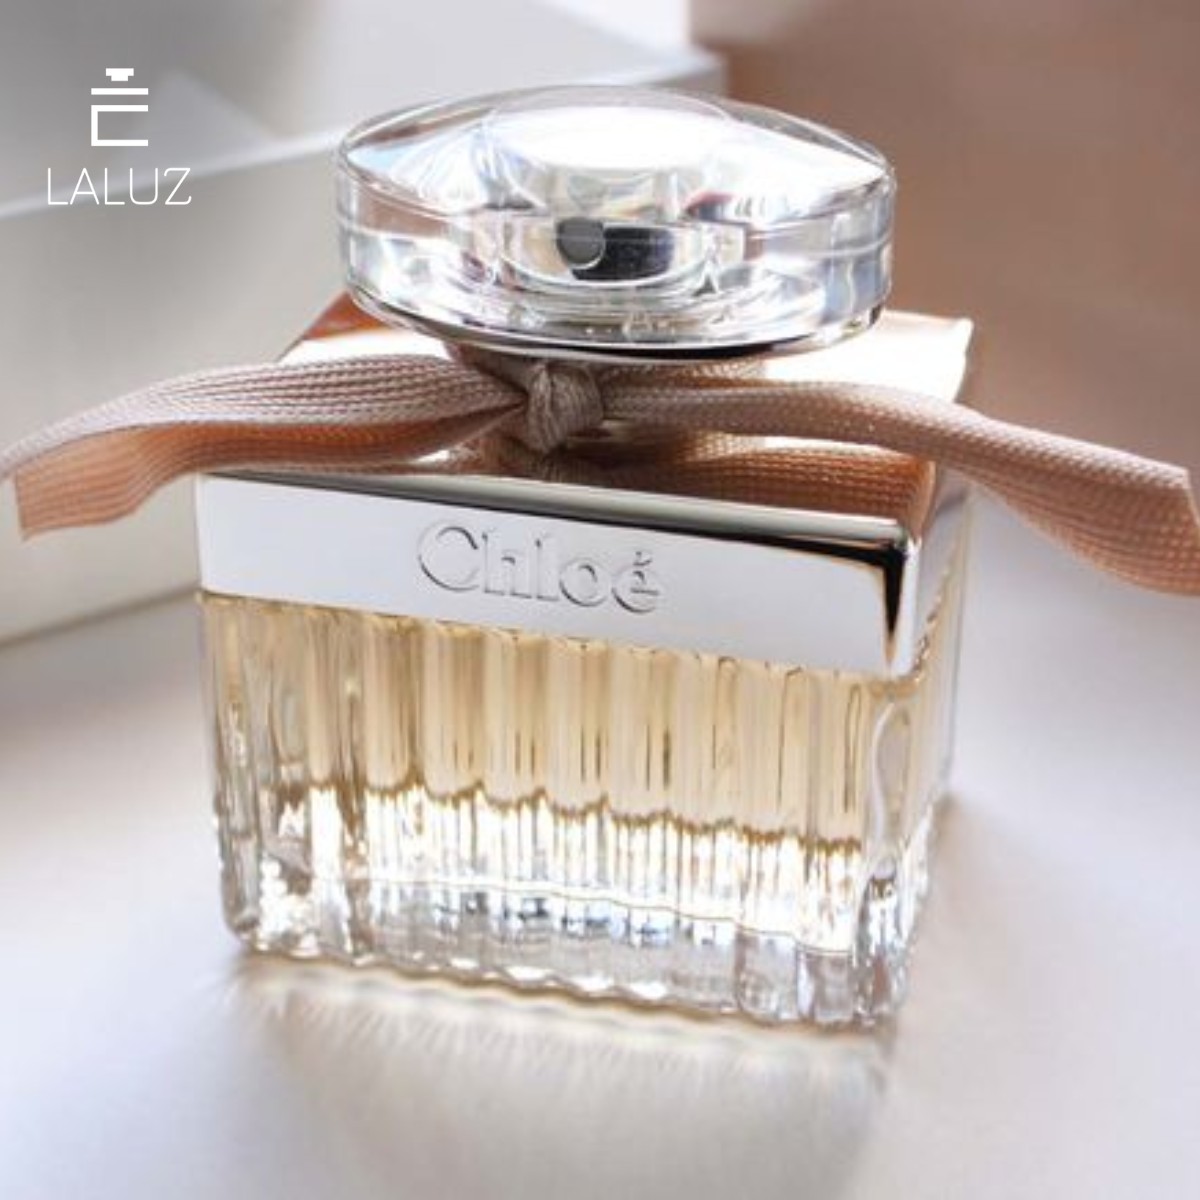 Chloé Eau De Parfum dành cho nữ giá tốt nhất tại LALUZ